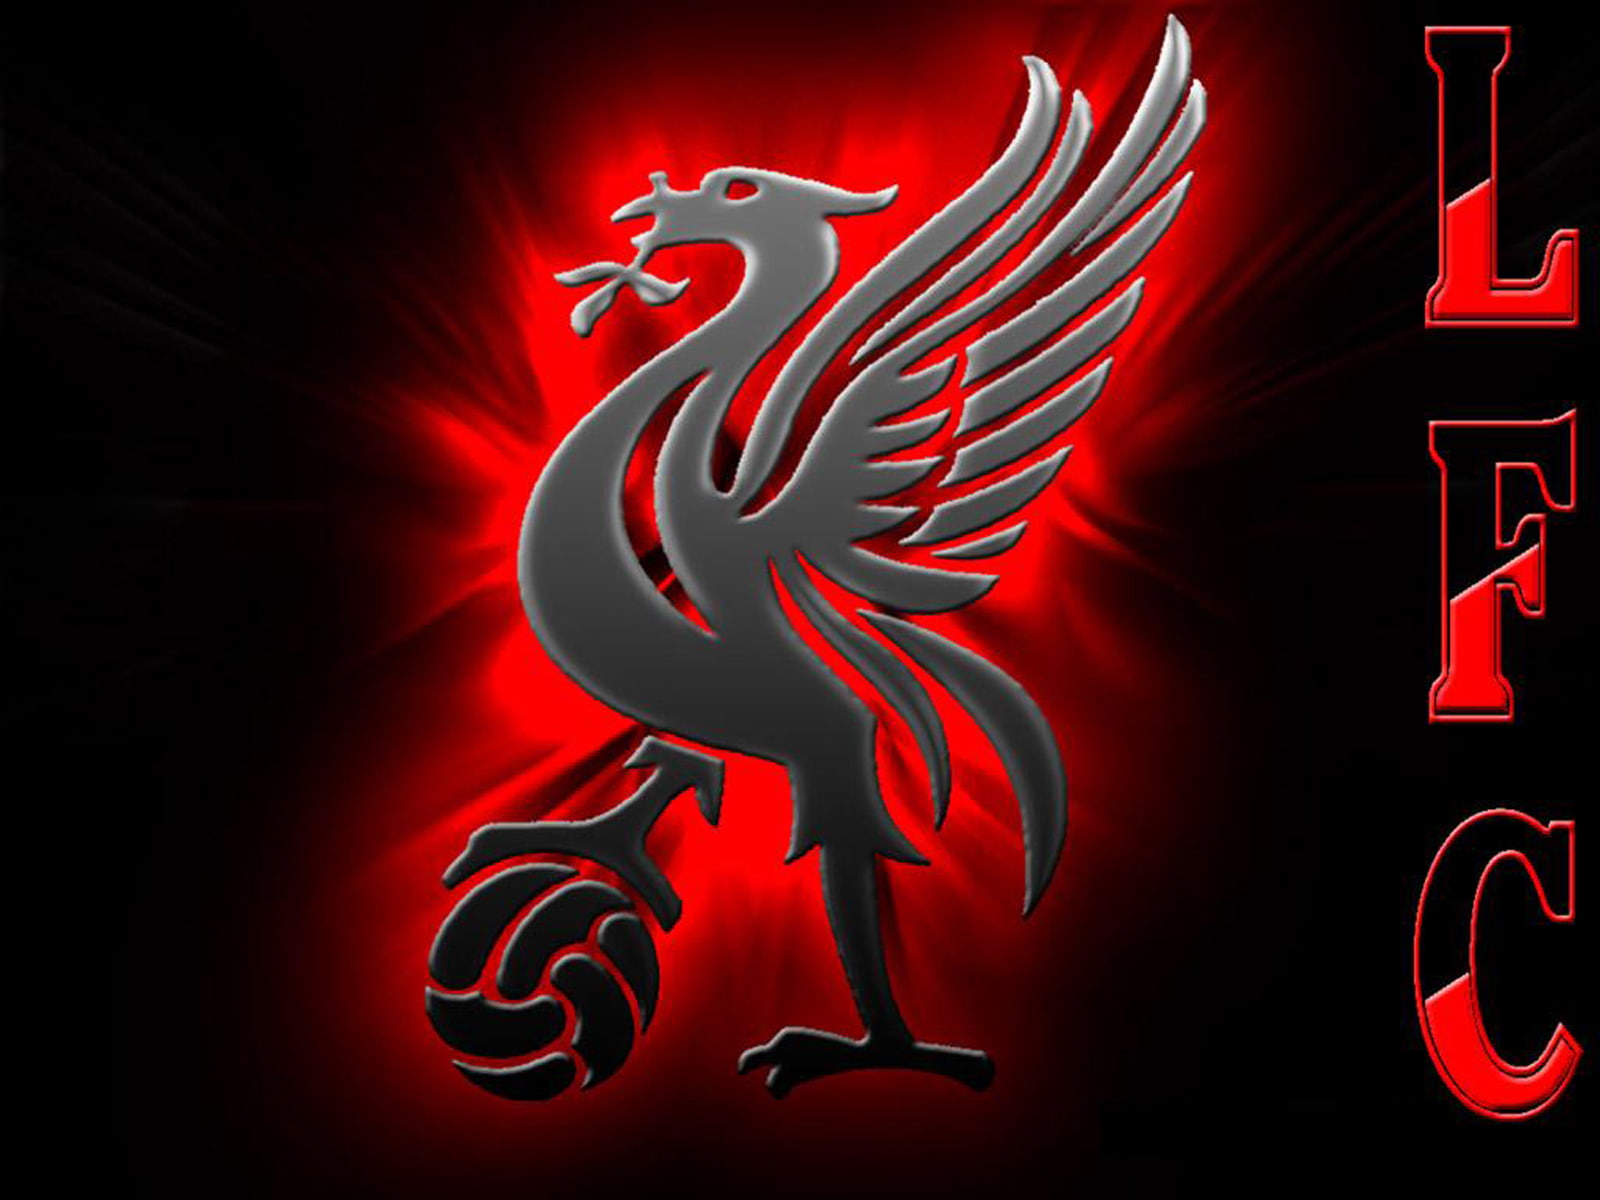 Liverpool Fc b4 Sports Football HD Art, Football Club Liverpool Fc